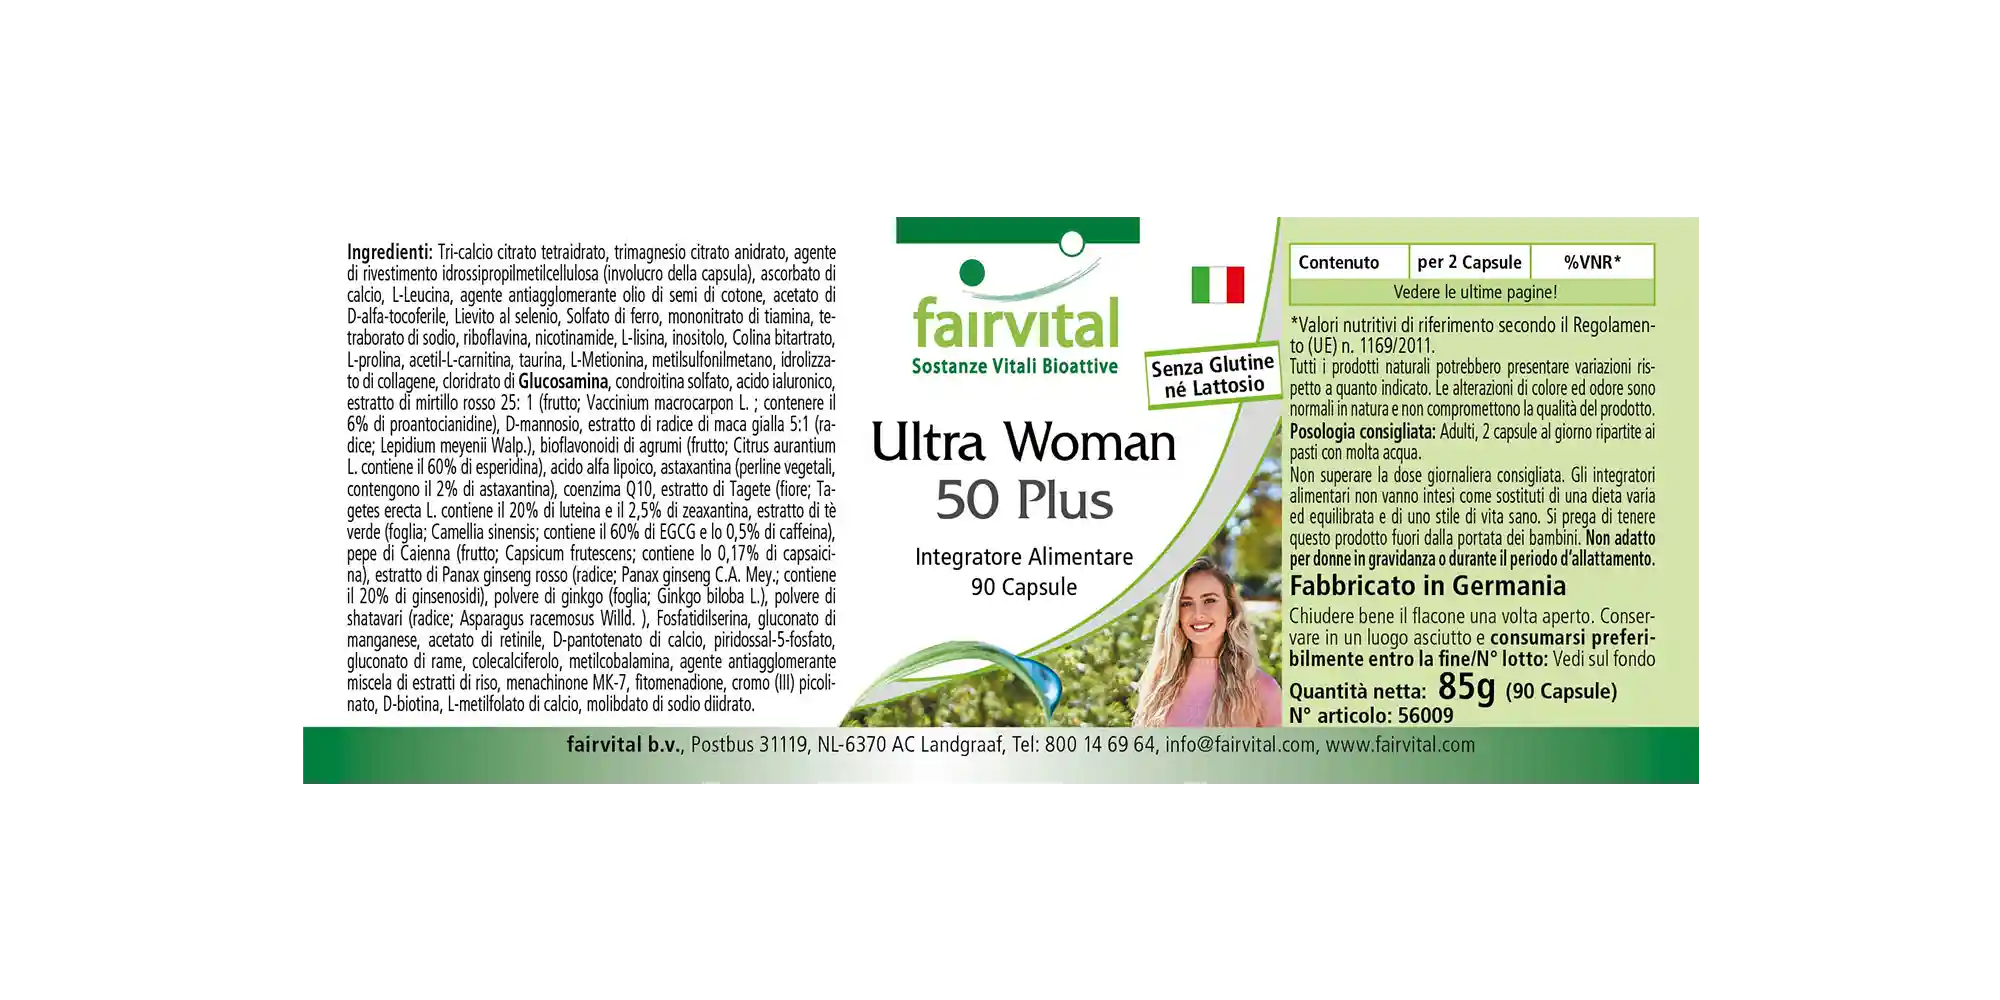 Ultra Woman 50 Plus